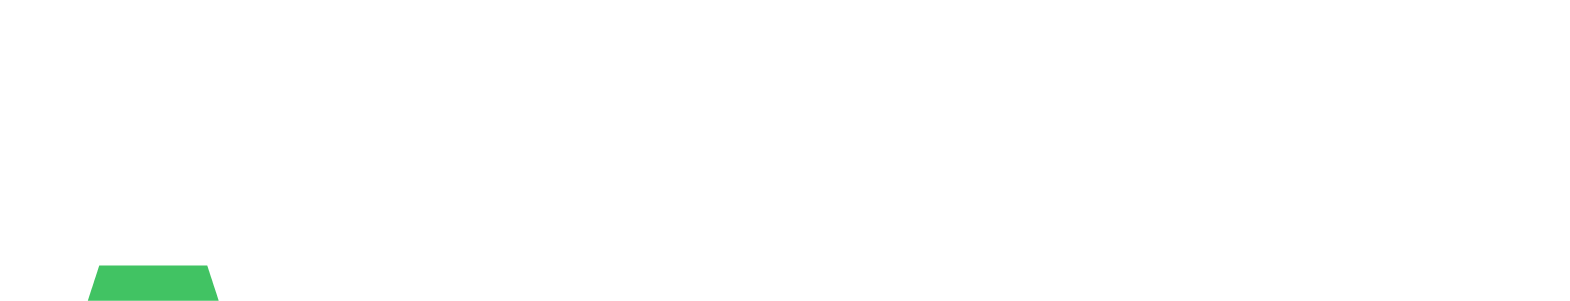 Avnet logo large for dark backgrounds (transparent PNG)